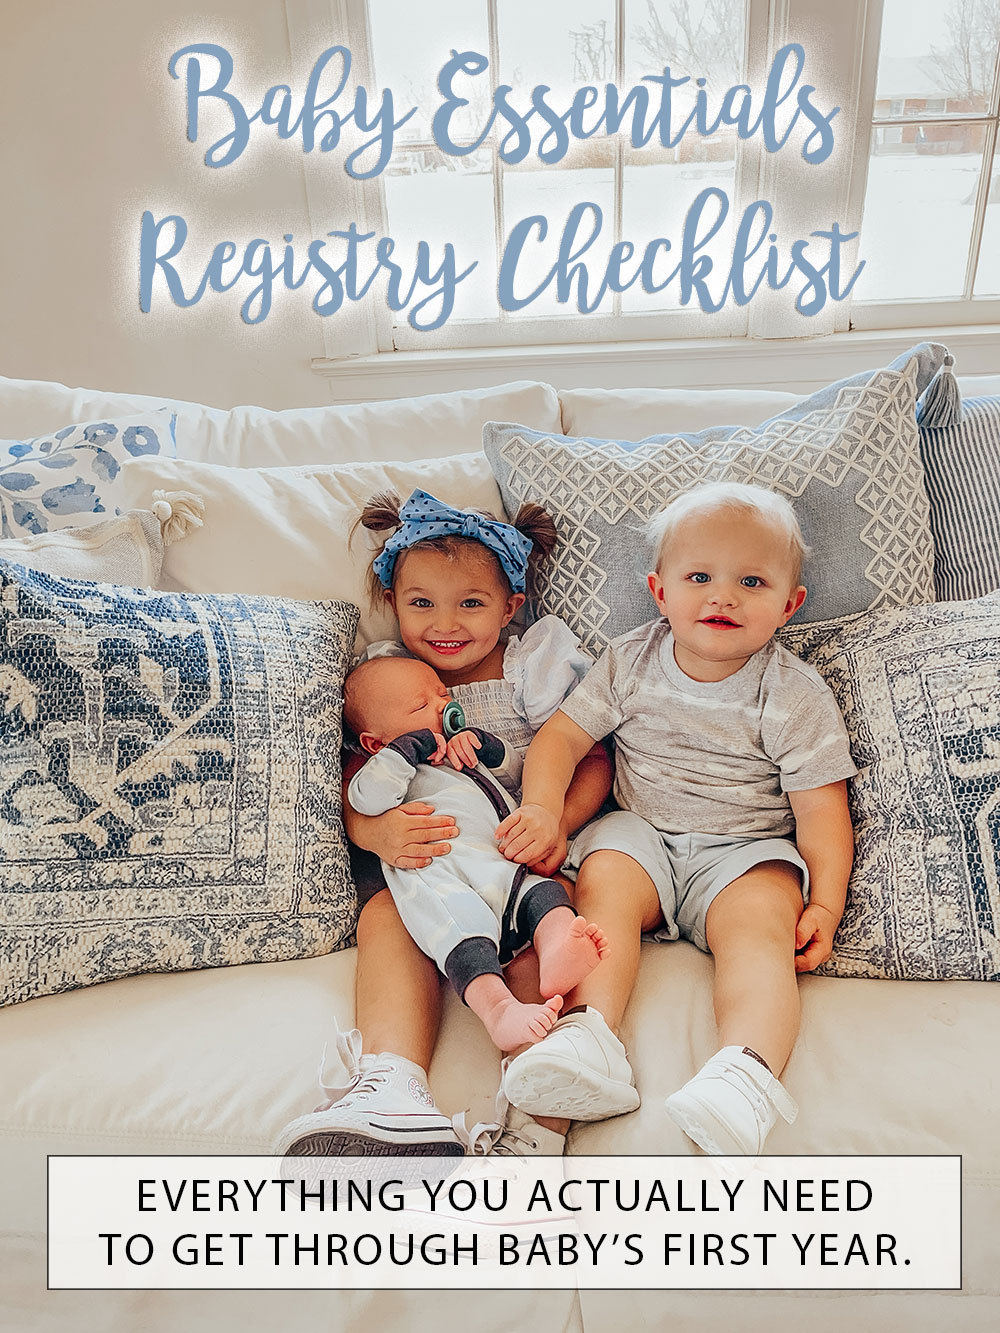 https://vandifair.com/wp-content/uploads/2022/03/baby-essentials-registry-checklist.jpg